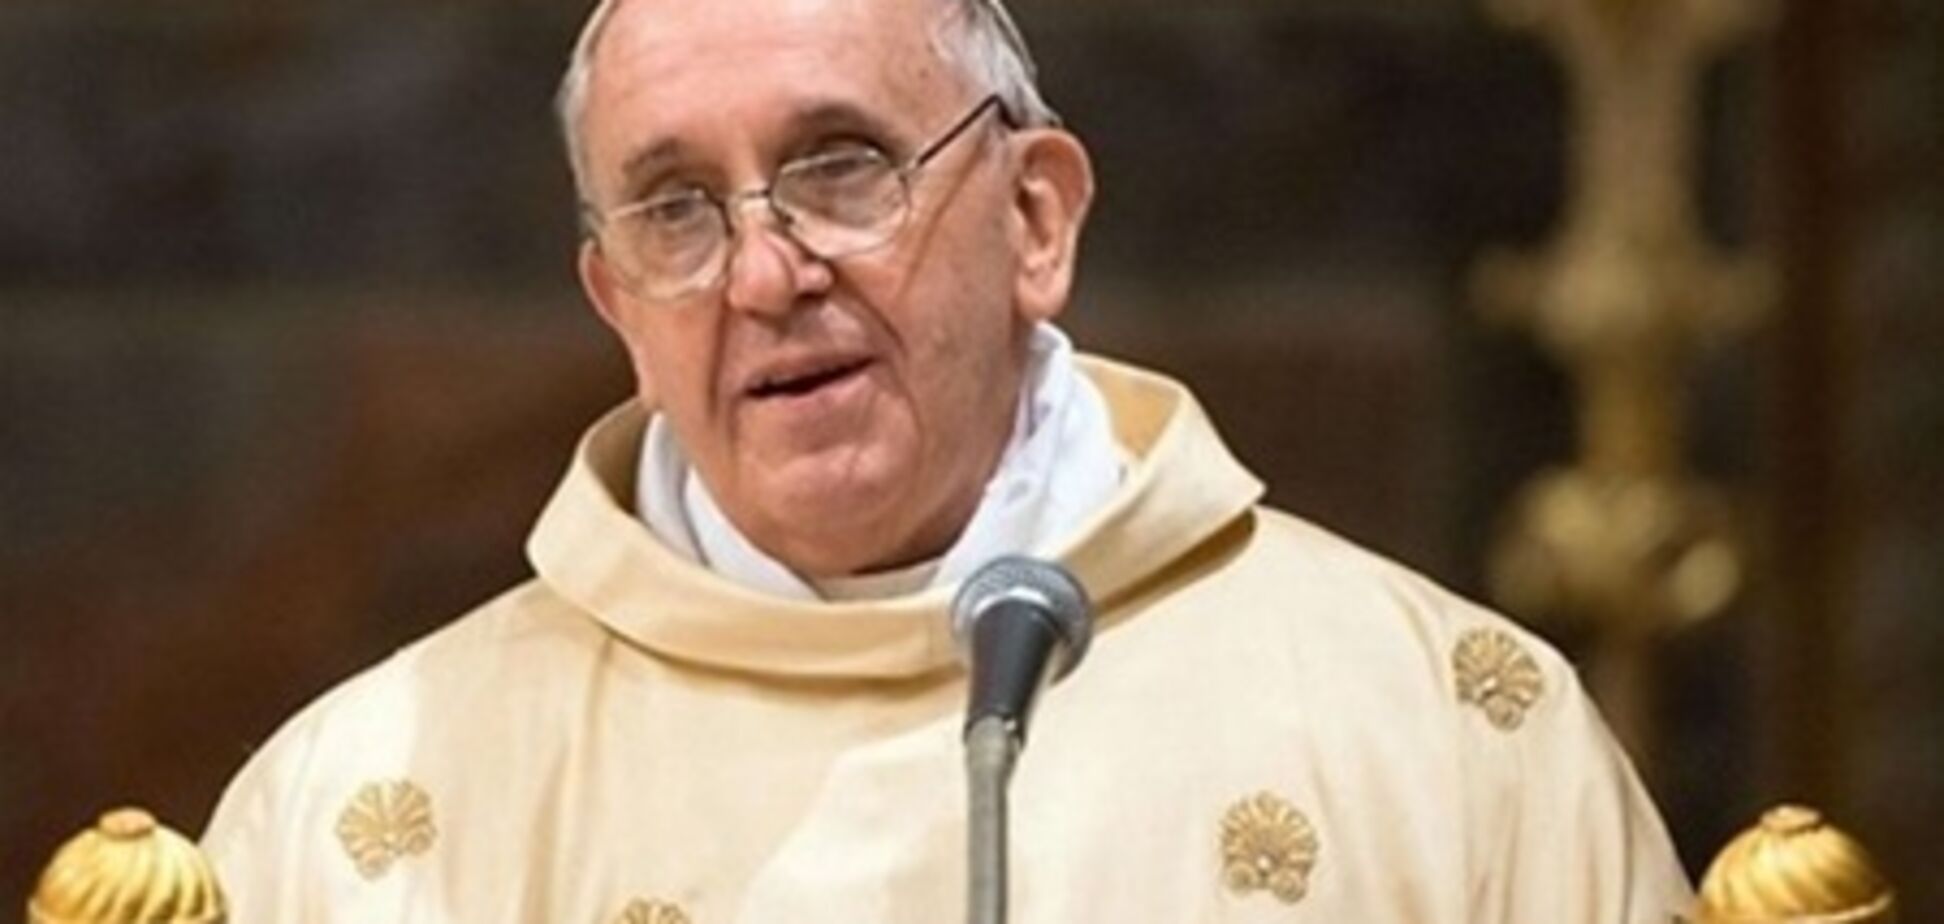 Папа Римский будет отпускать грехи с помощью Twitter